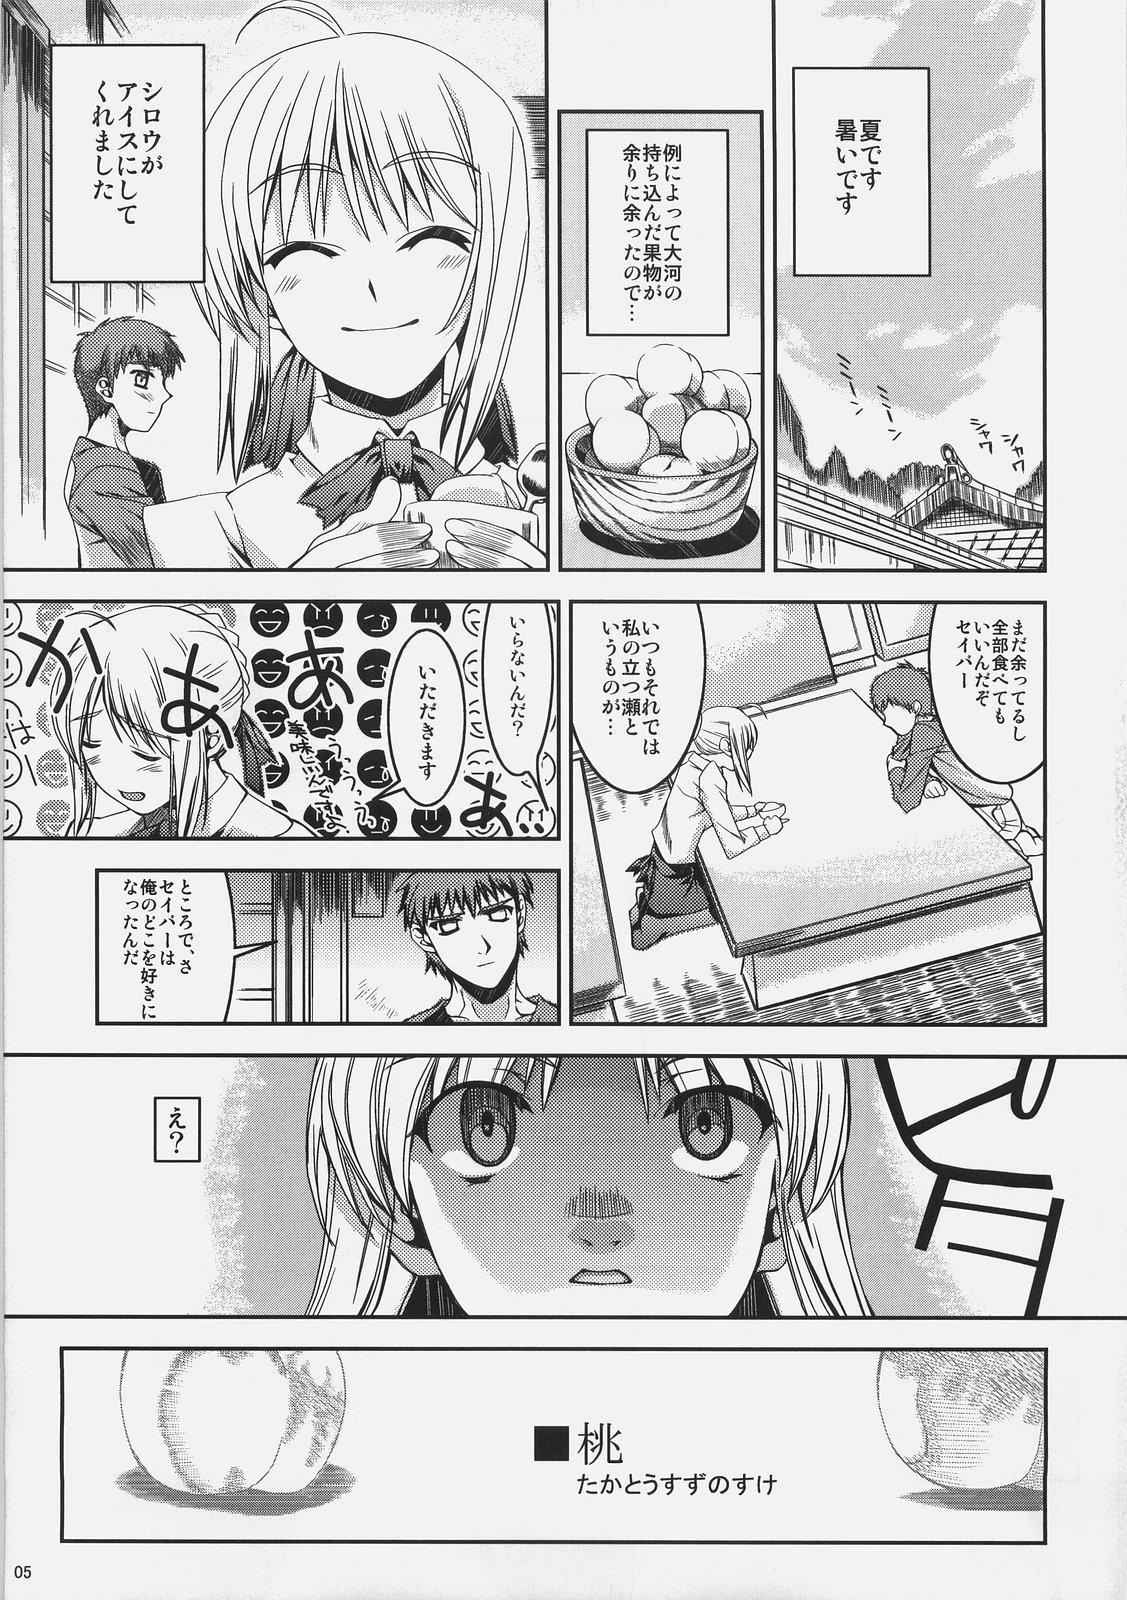 Chichona Kuuneru Asobu - Fate stay night Buttfucking - Page 5